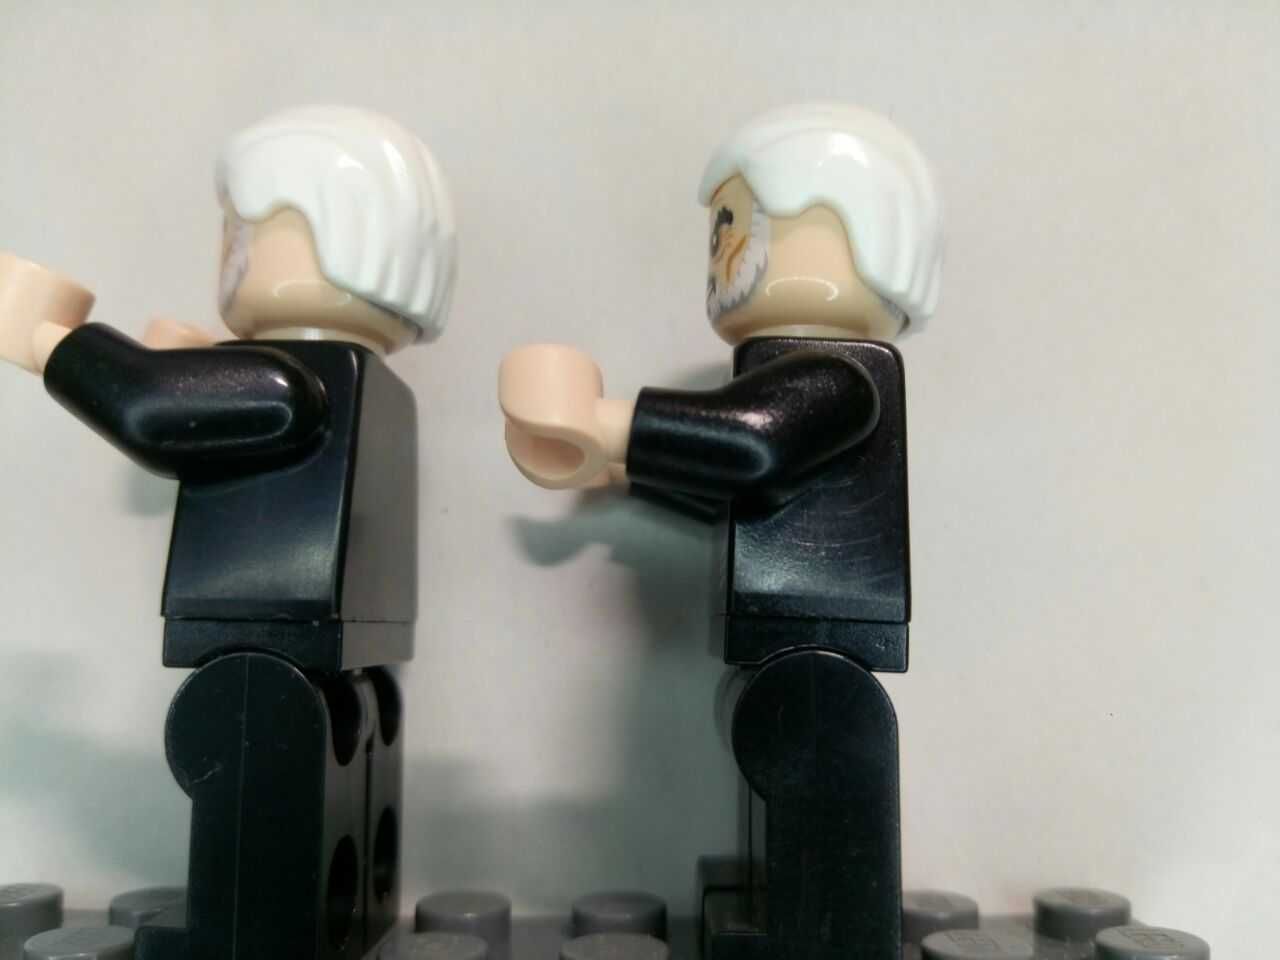 Lego Star Wars sw0472 (Count Dooku, 2013)